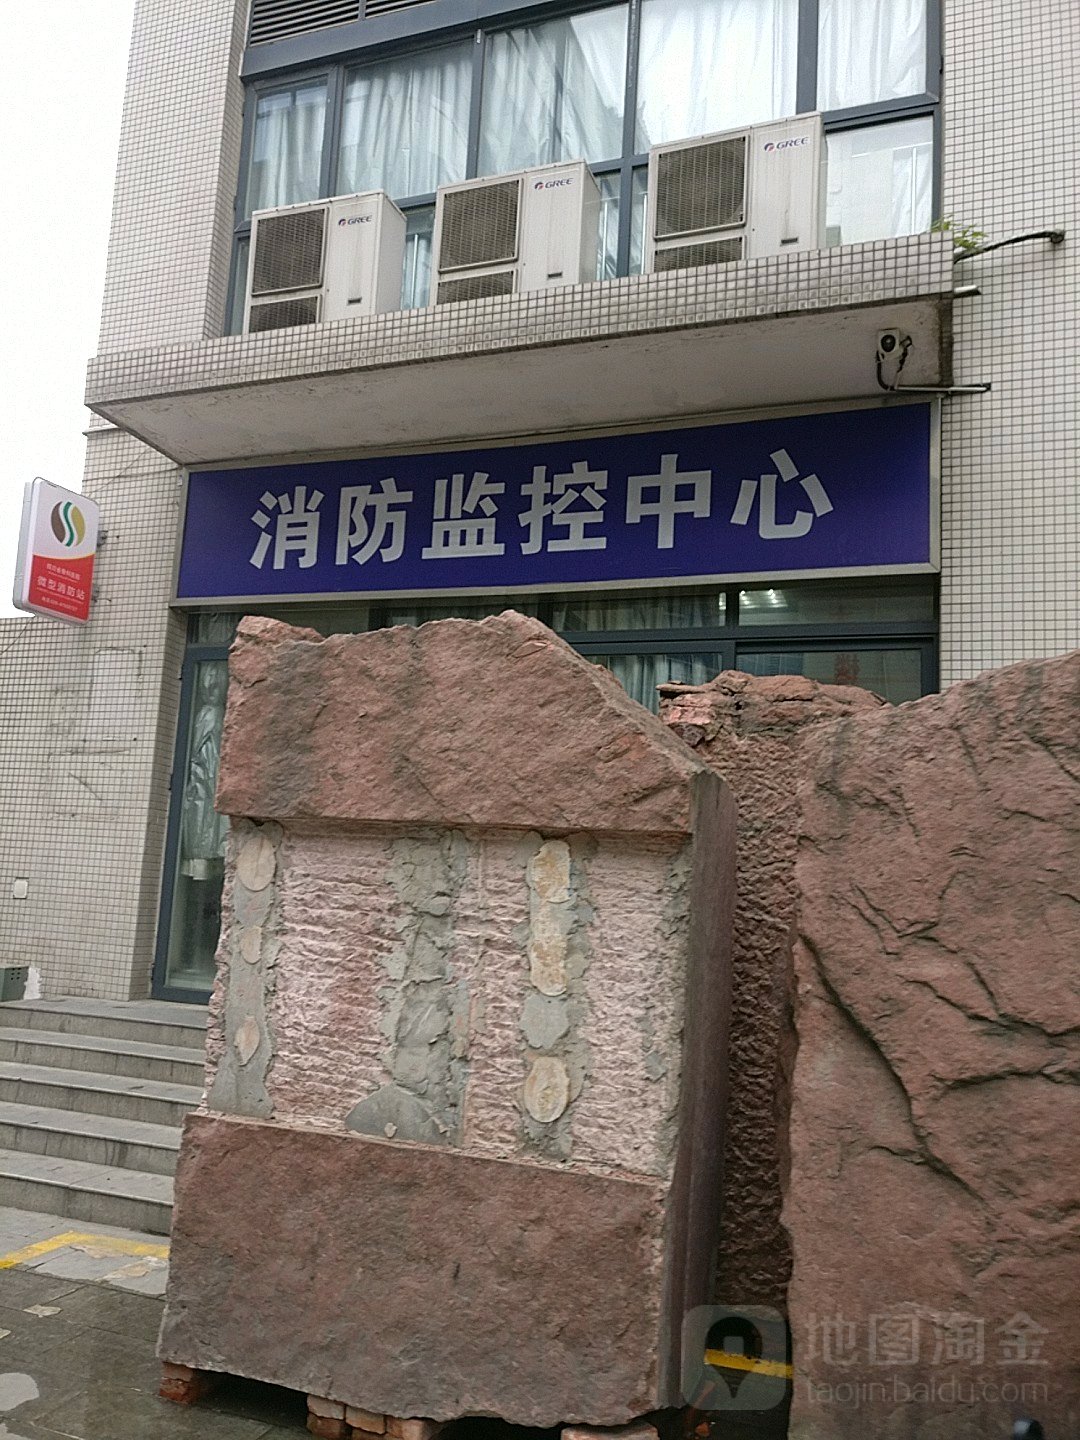 四川省骨科醫院消防監控中心